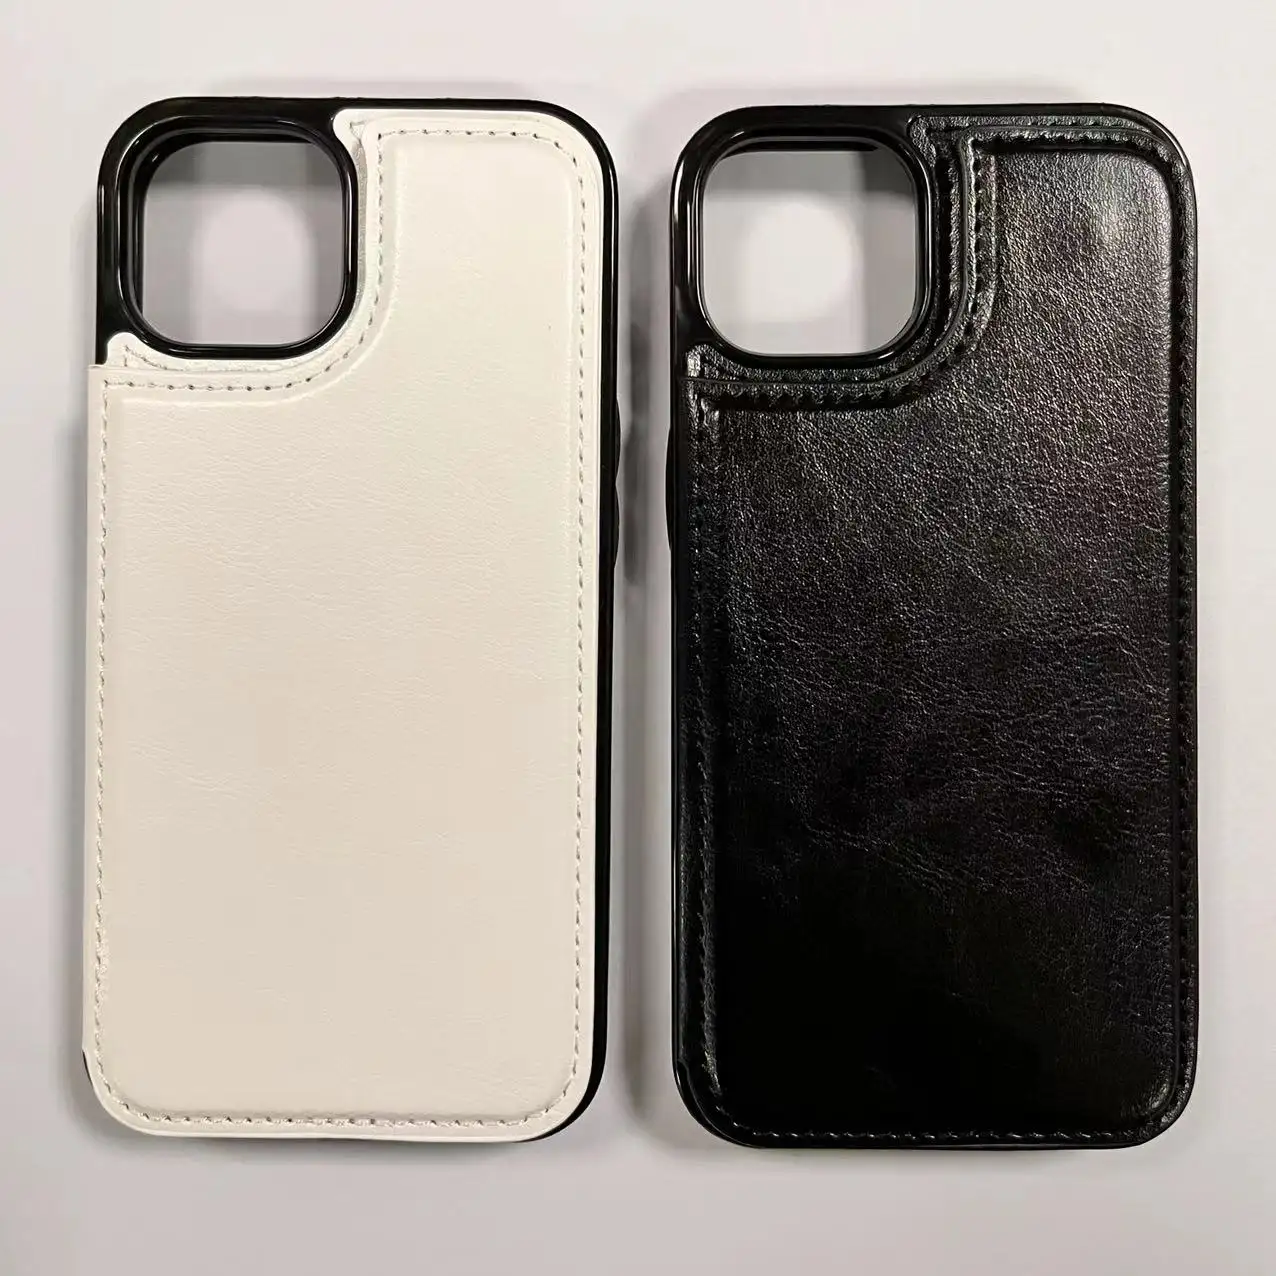 लक्जरी चुंबकीय पु चमड़े बटुआ कार्ड फोन के मामले में एप्पल Iphone के लिए 13 प्रो मैक्स